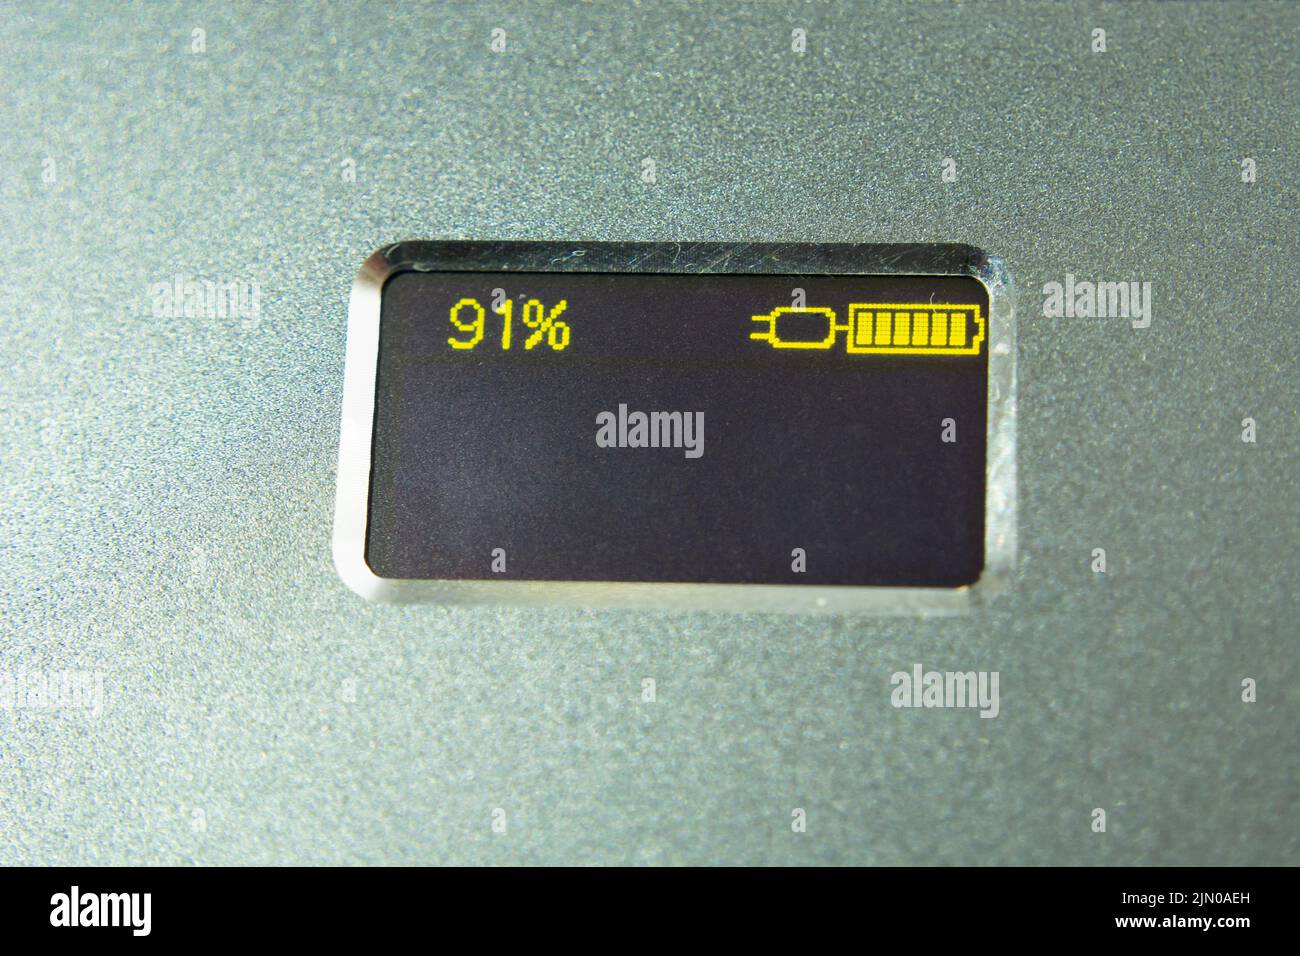 Petit écran LCD avec un niveau de batterie de quatre-vingt-dix pour cent Banque D'Images